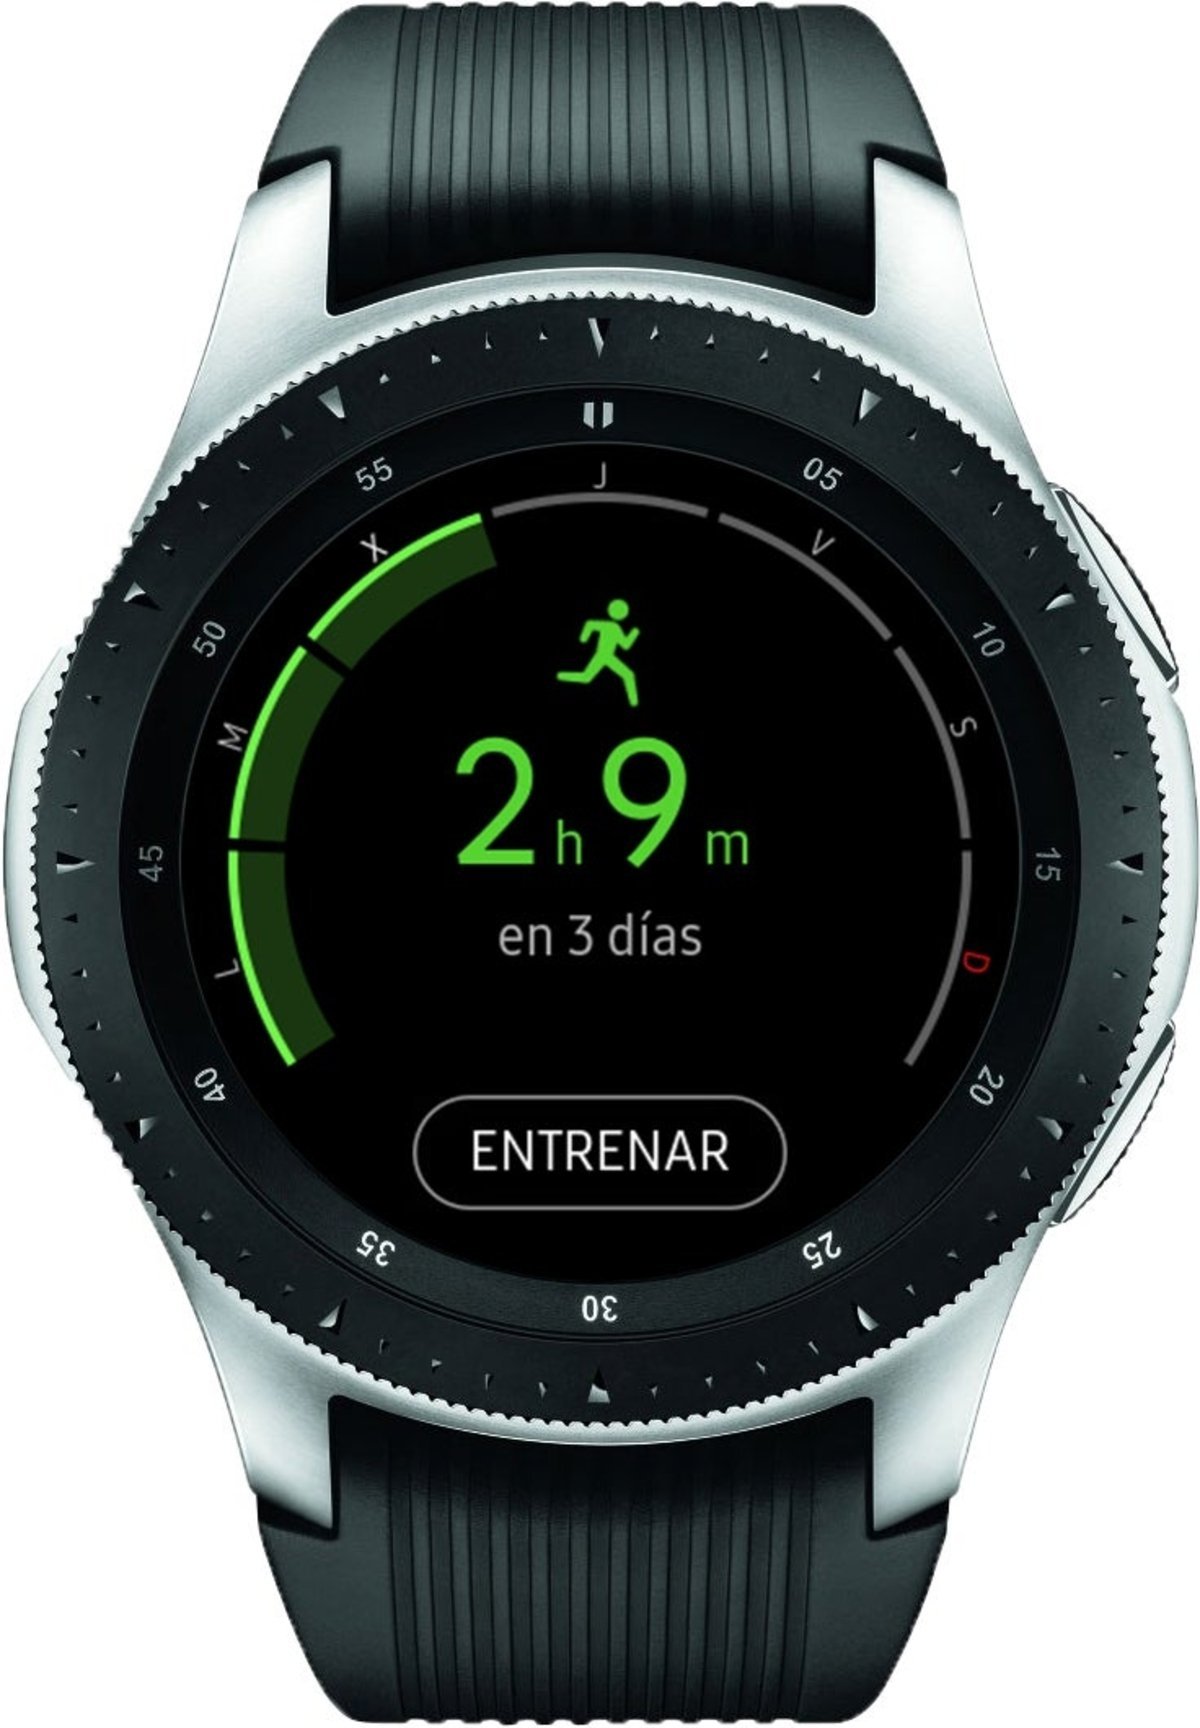 Samsung Galaxy Watch, análisis: al mejor smartwatch para Android solo le falta... Android